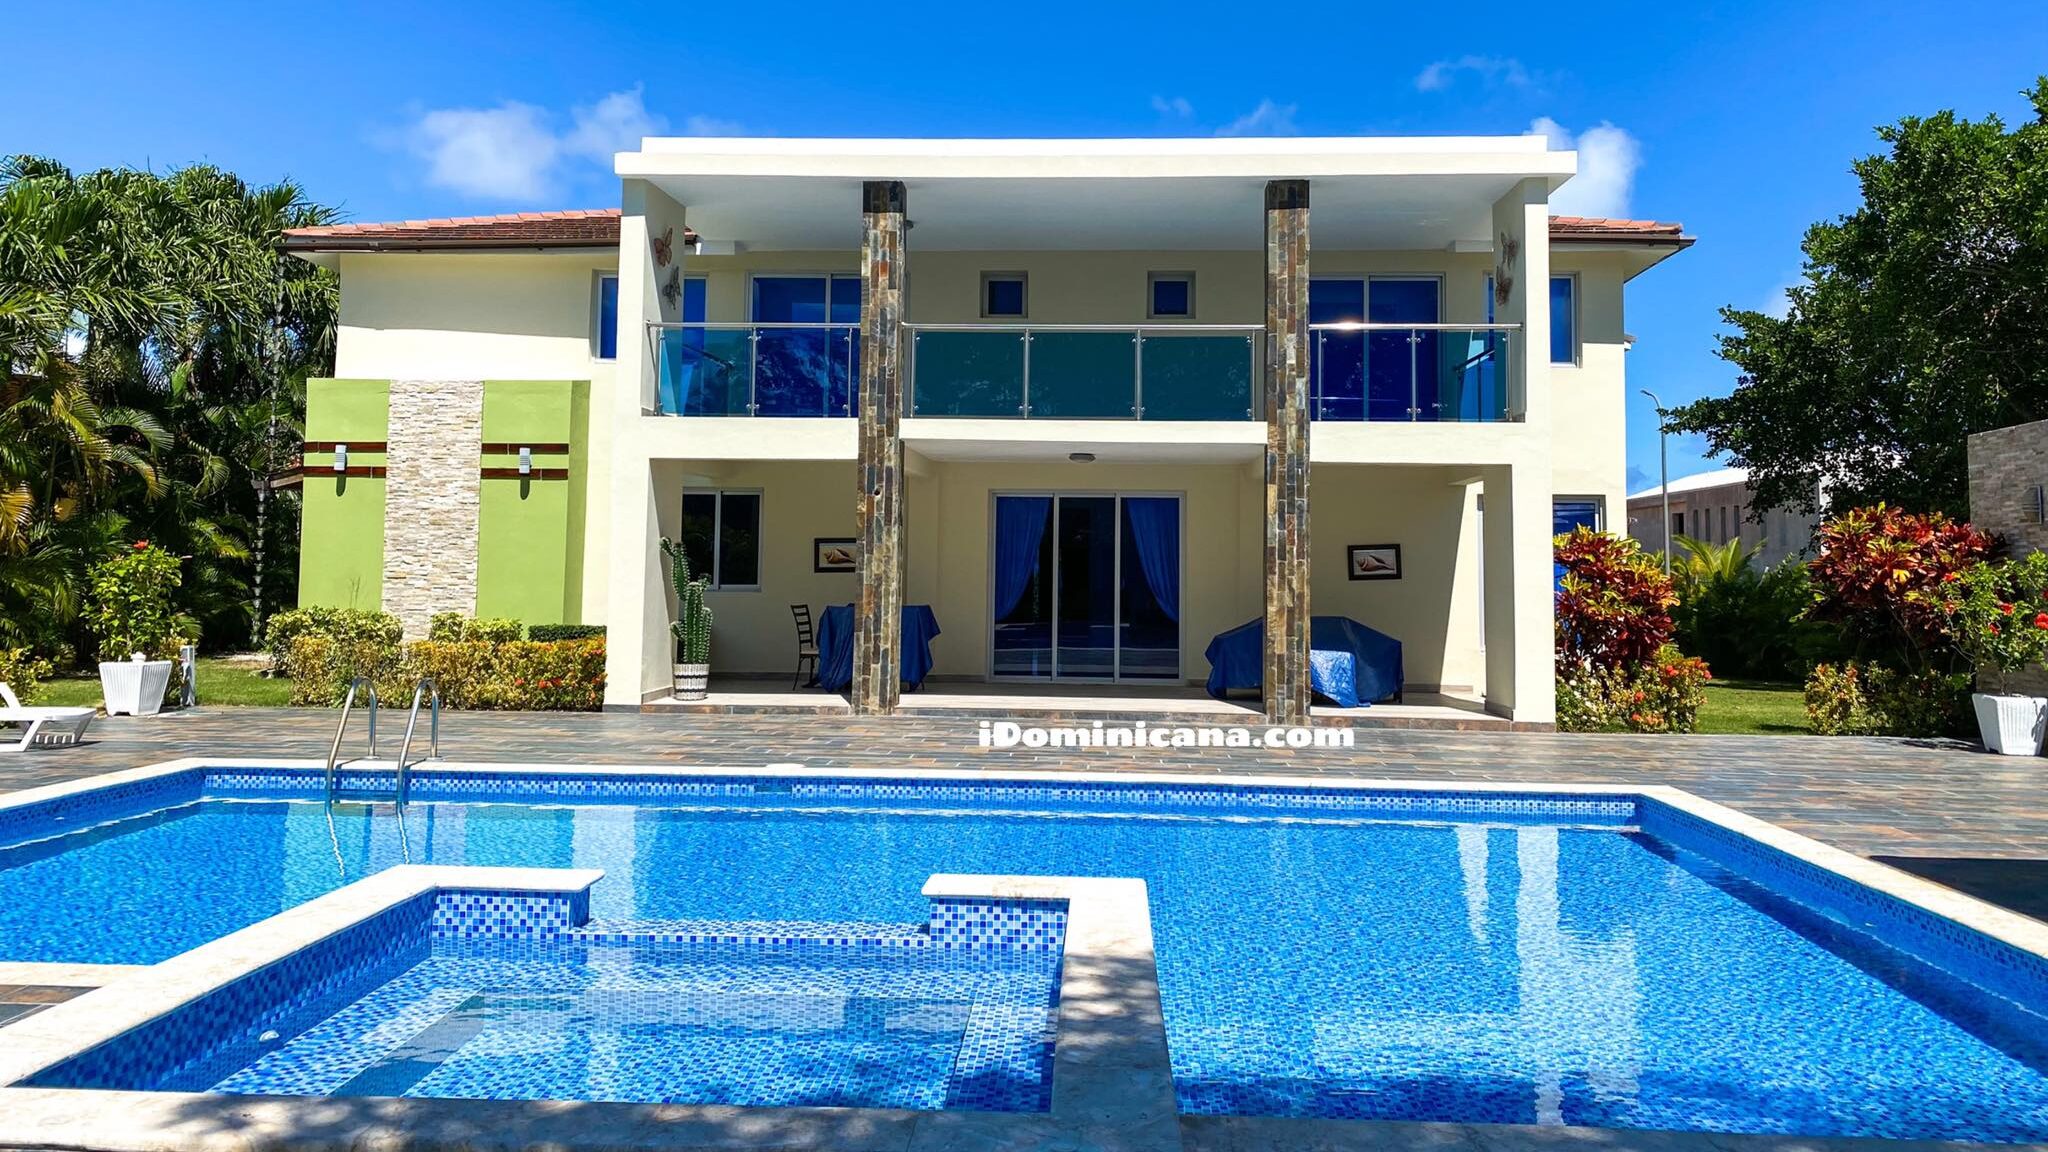 Аренда виллы в Доминикане: вилла «Prestige», Cocotal golf Club